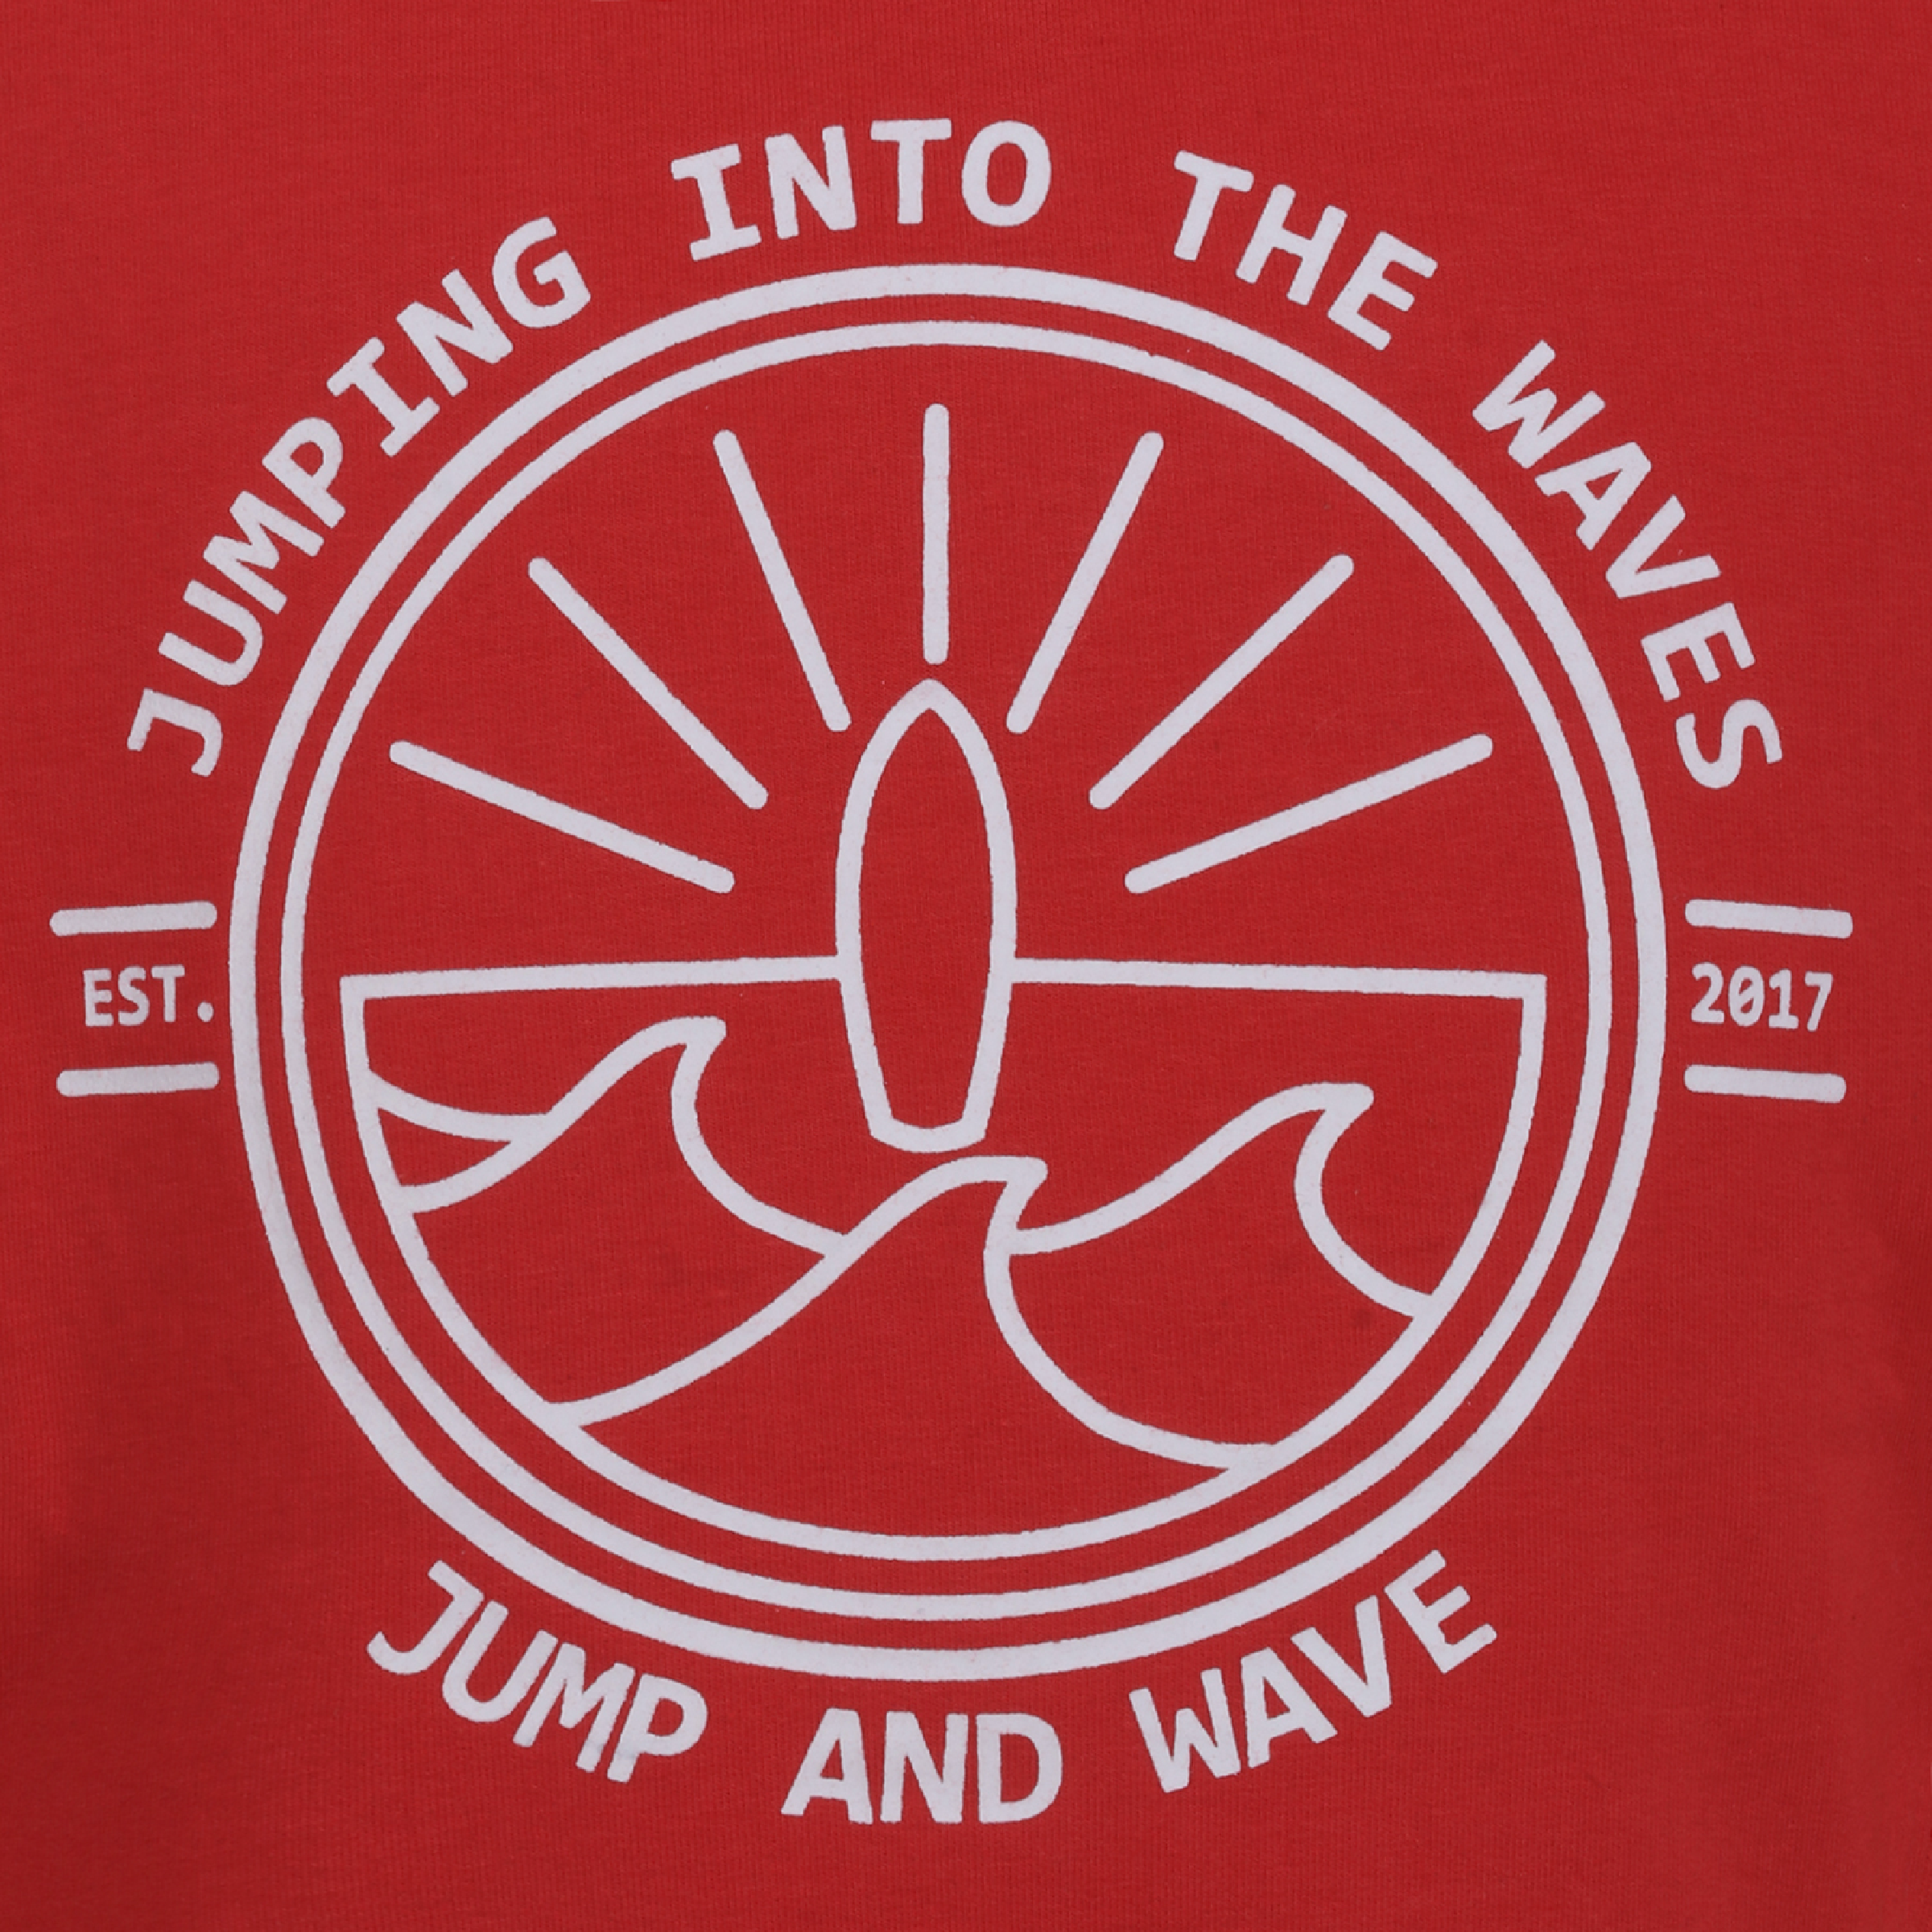 Jongens Sweater Jumping into the waves van Jumping The C in de kleur Rood in maat 146, 152.